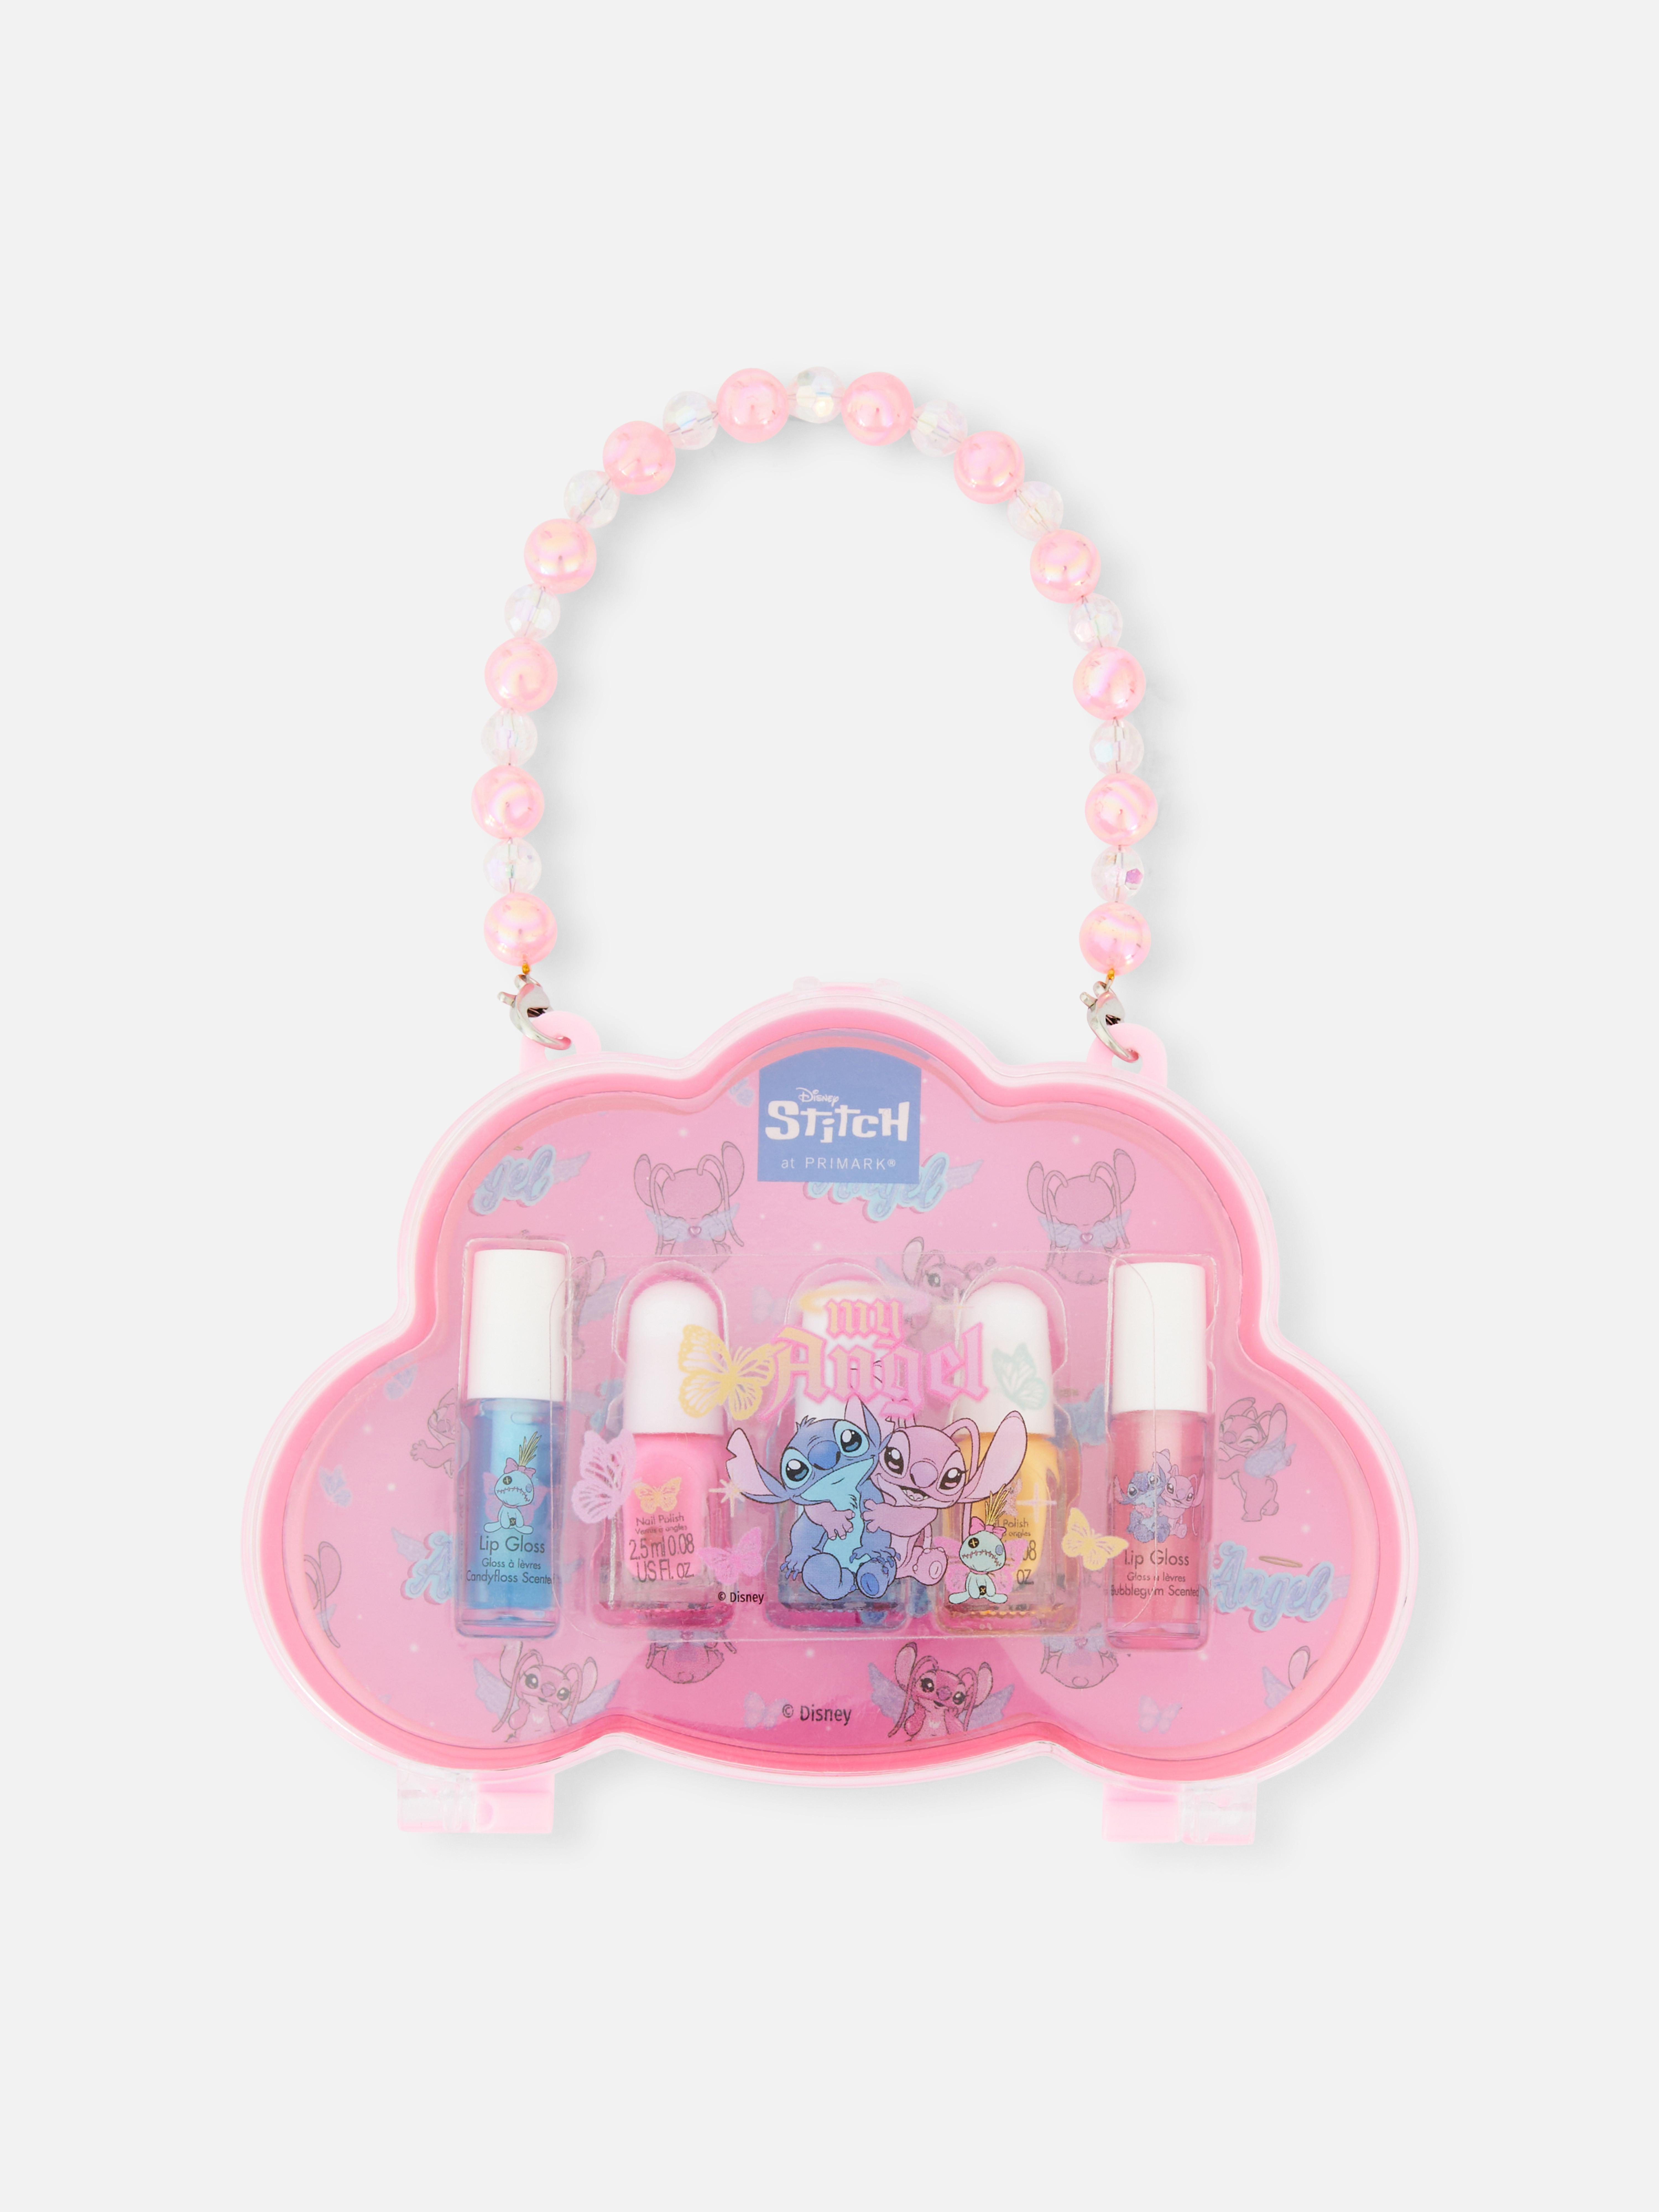 Disney’s Lilo and Stitch Lip Gloss and Nail Polish Set